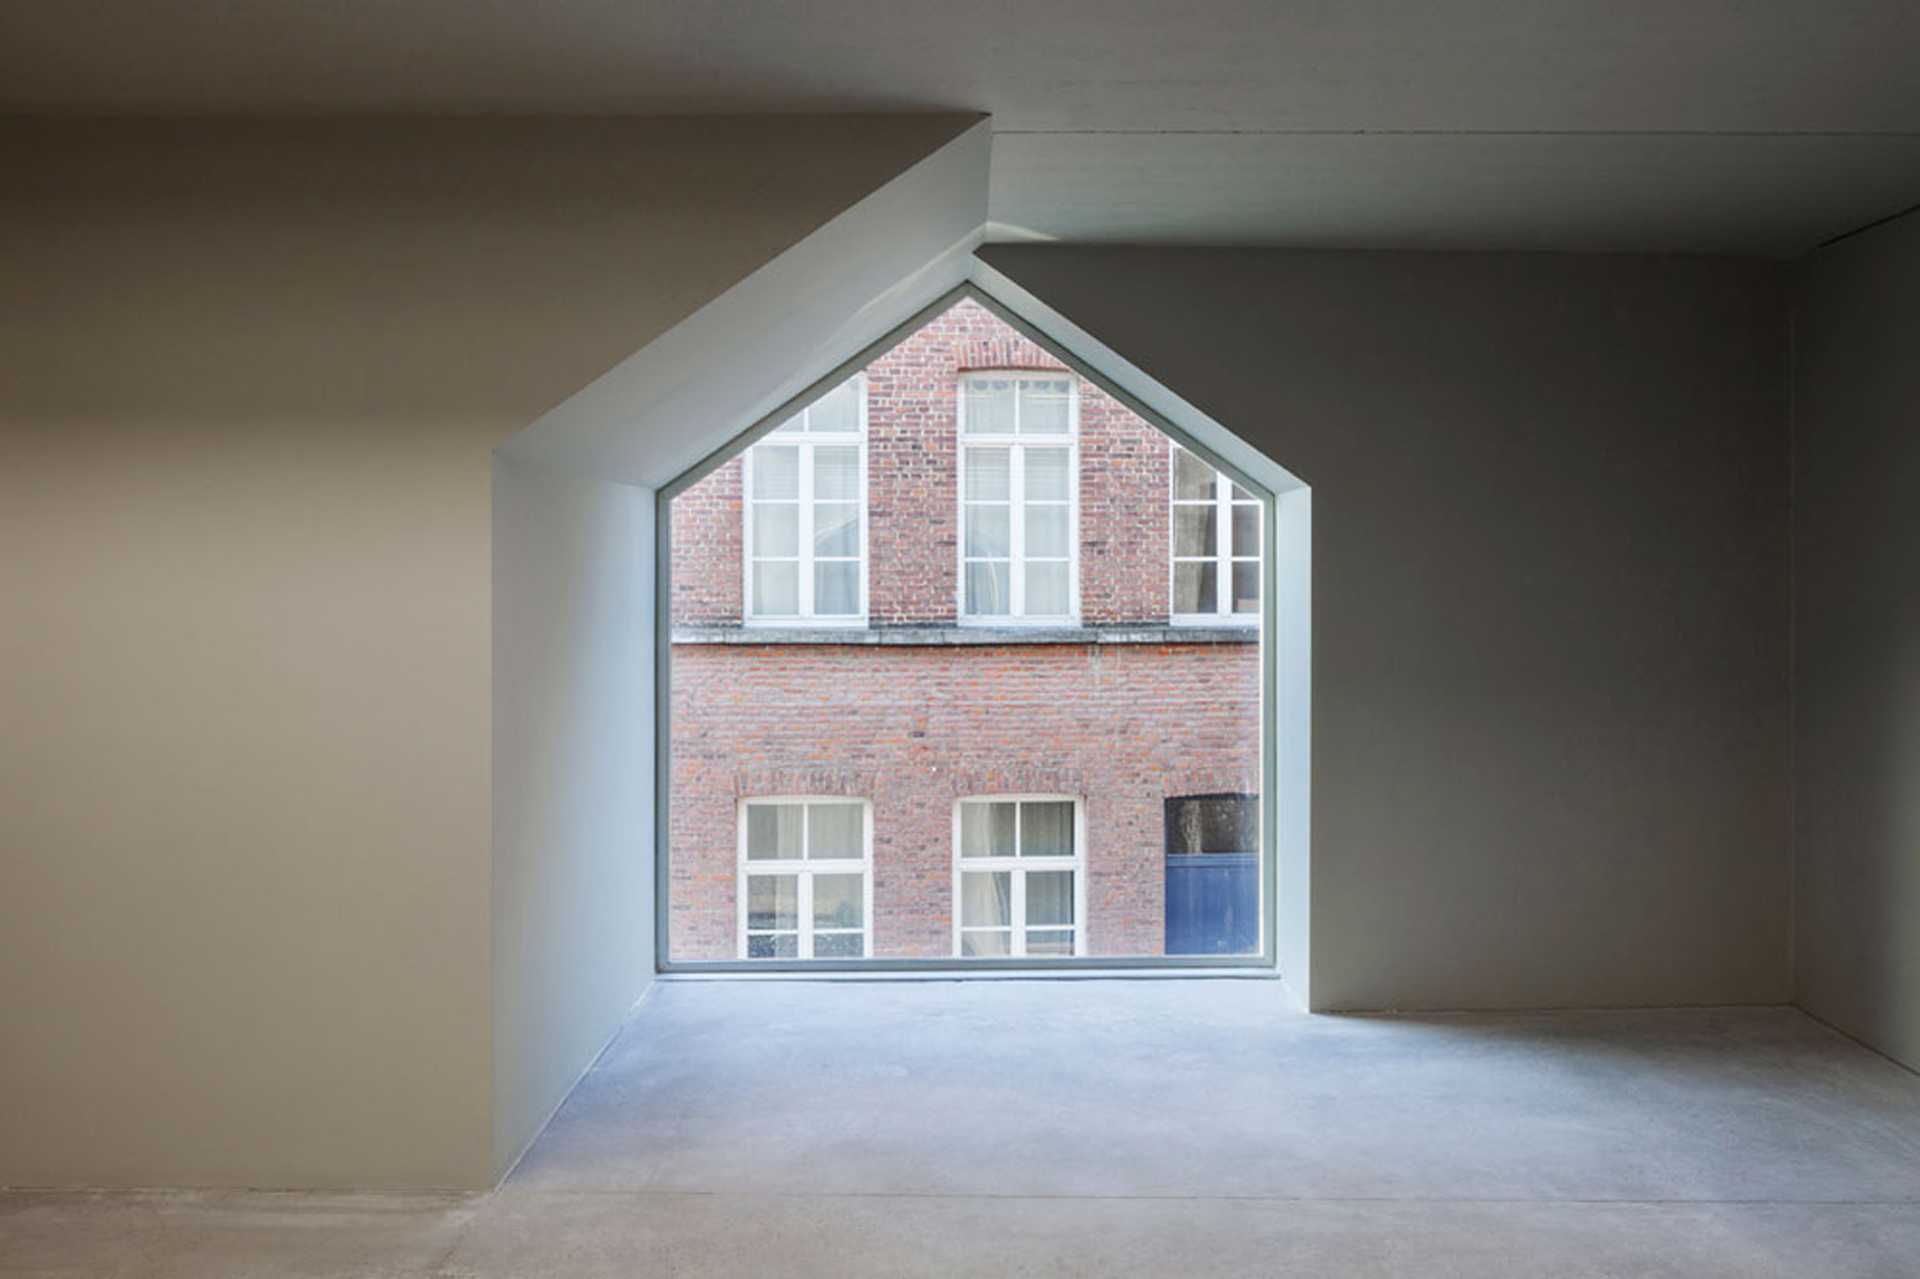 Numero immagine 36 della sezione corrente di Architecture School in Tournai di Cosentino Italia